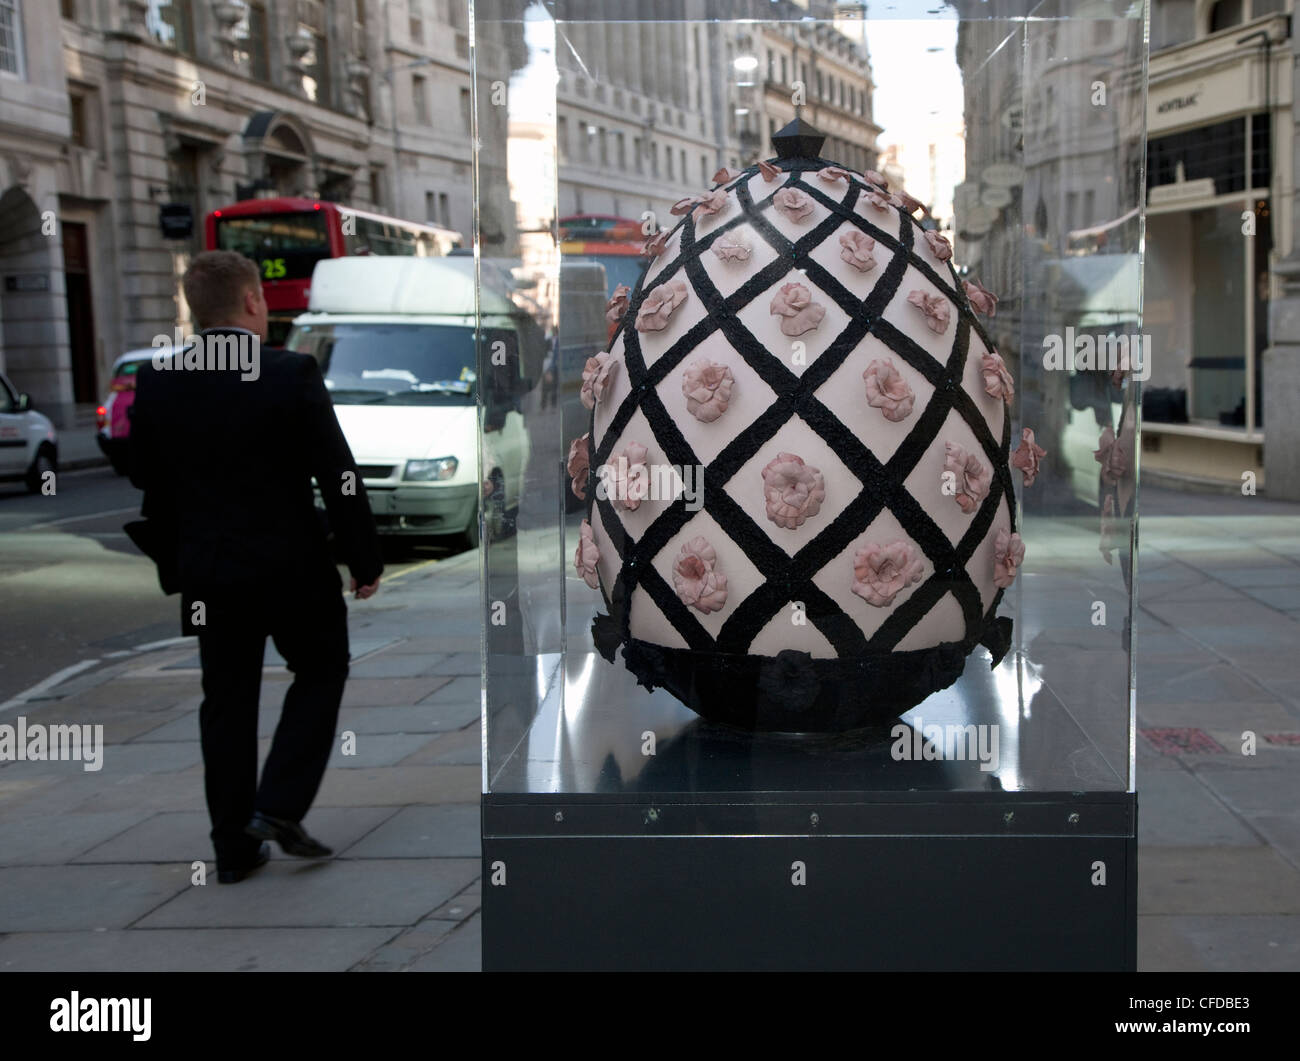 Faberge uovo grande caccia, Londra - artista Rachel Freire con ECCO IL CUOIO Foto Stock